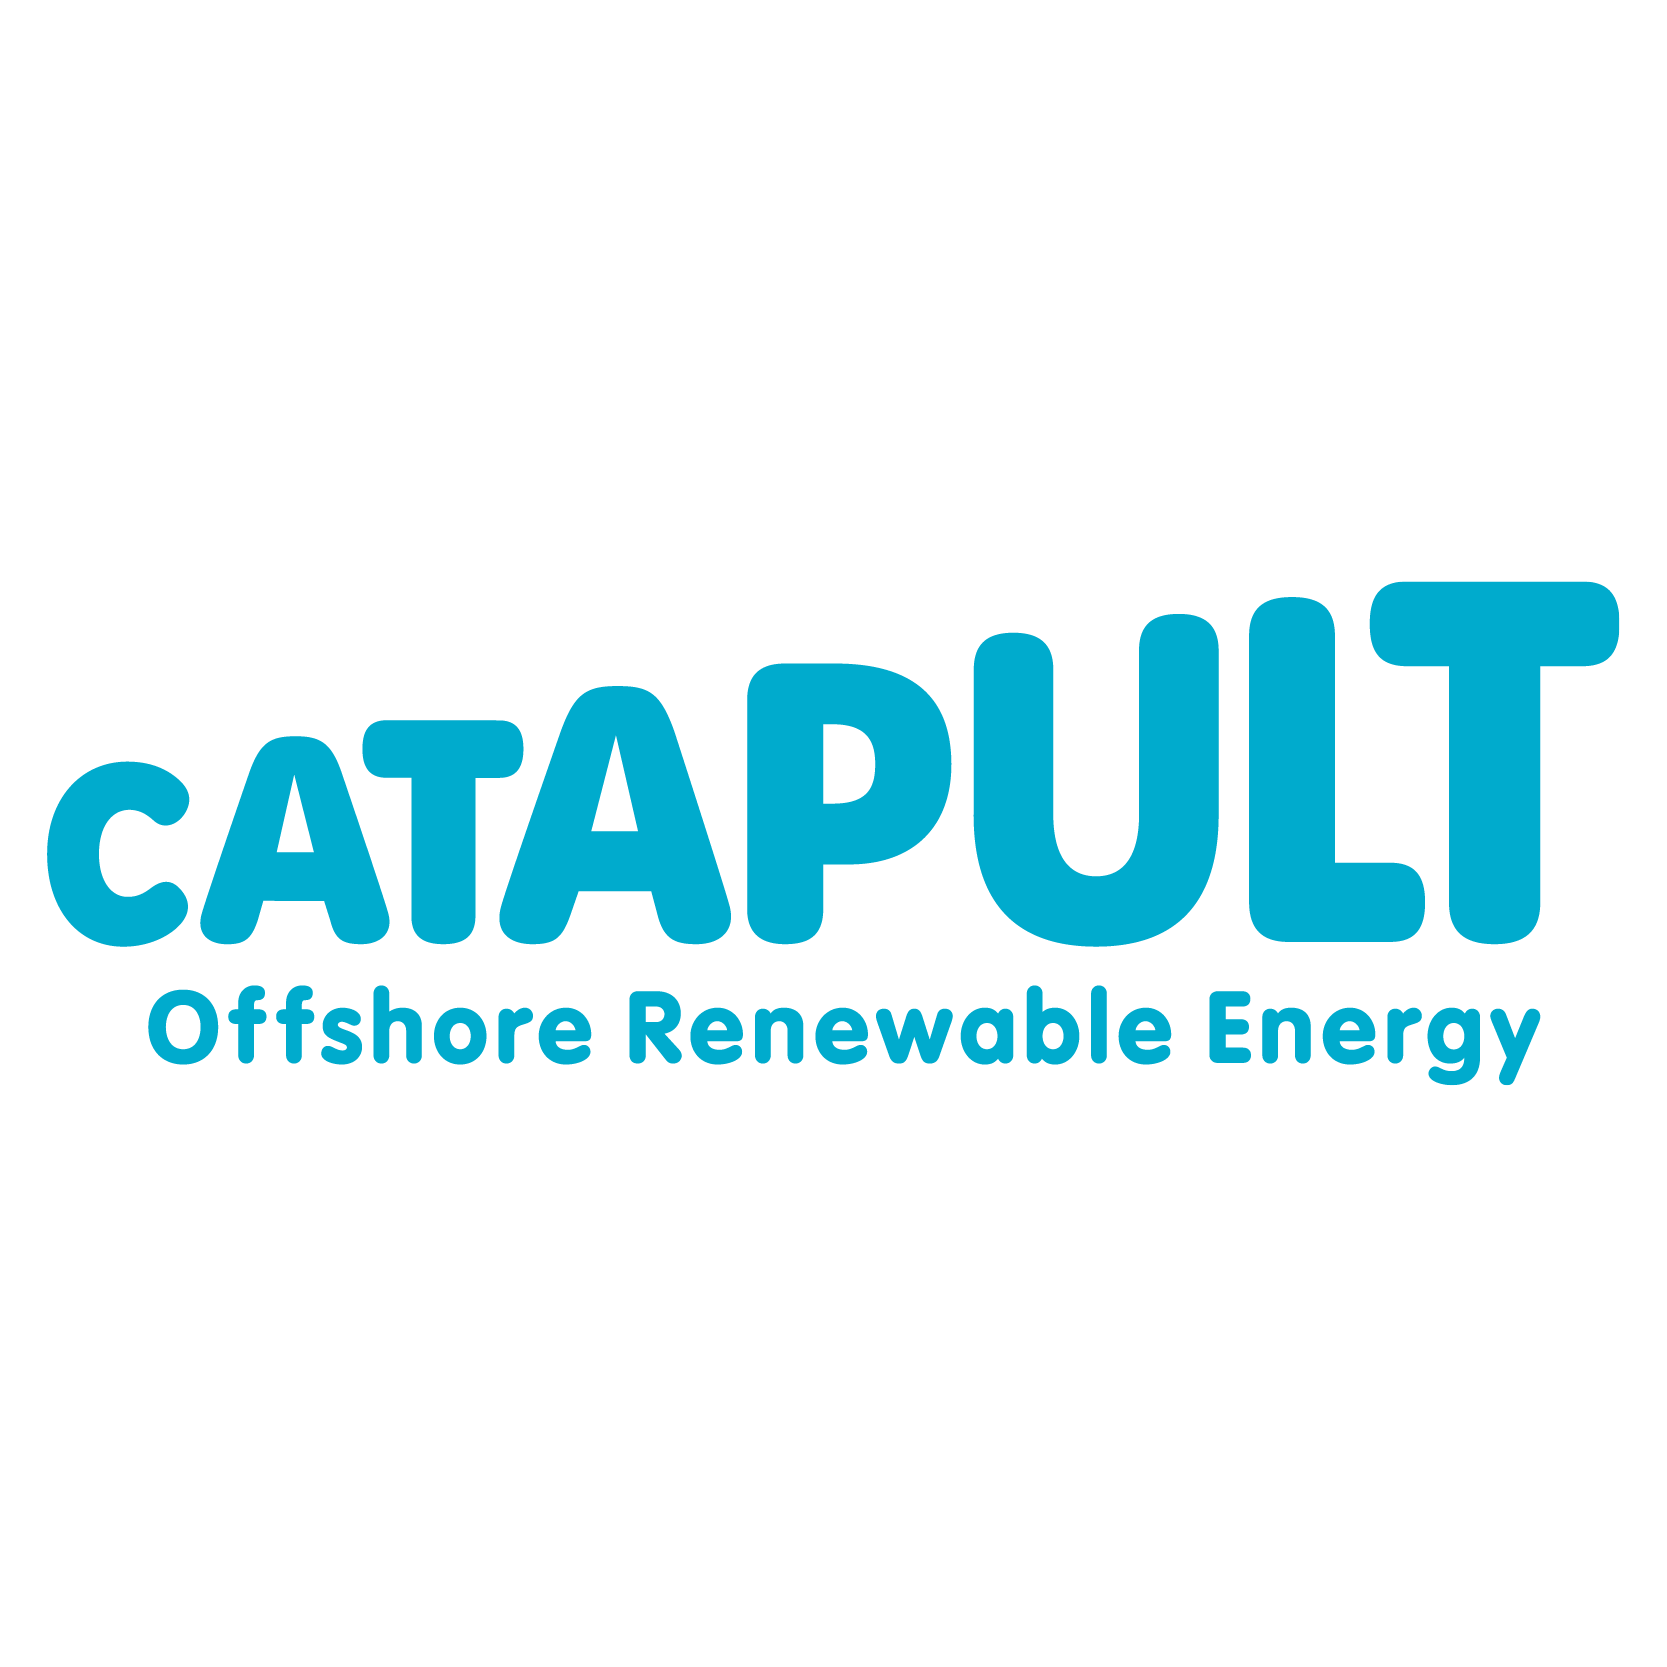 Offshore Renewable Energy Catapult logo in light blue